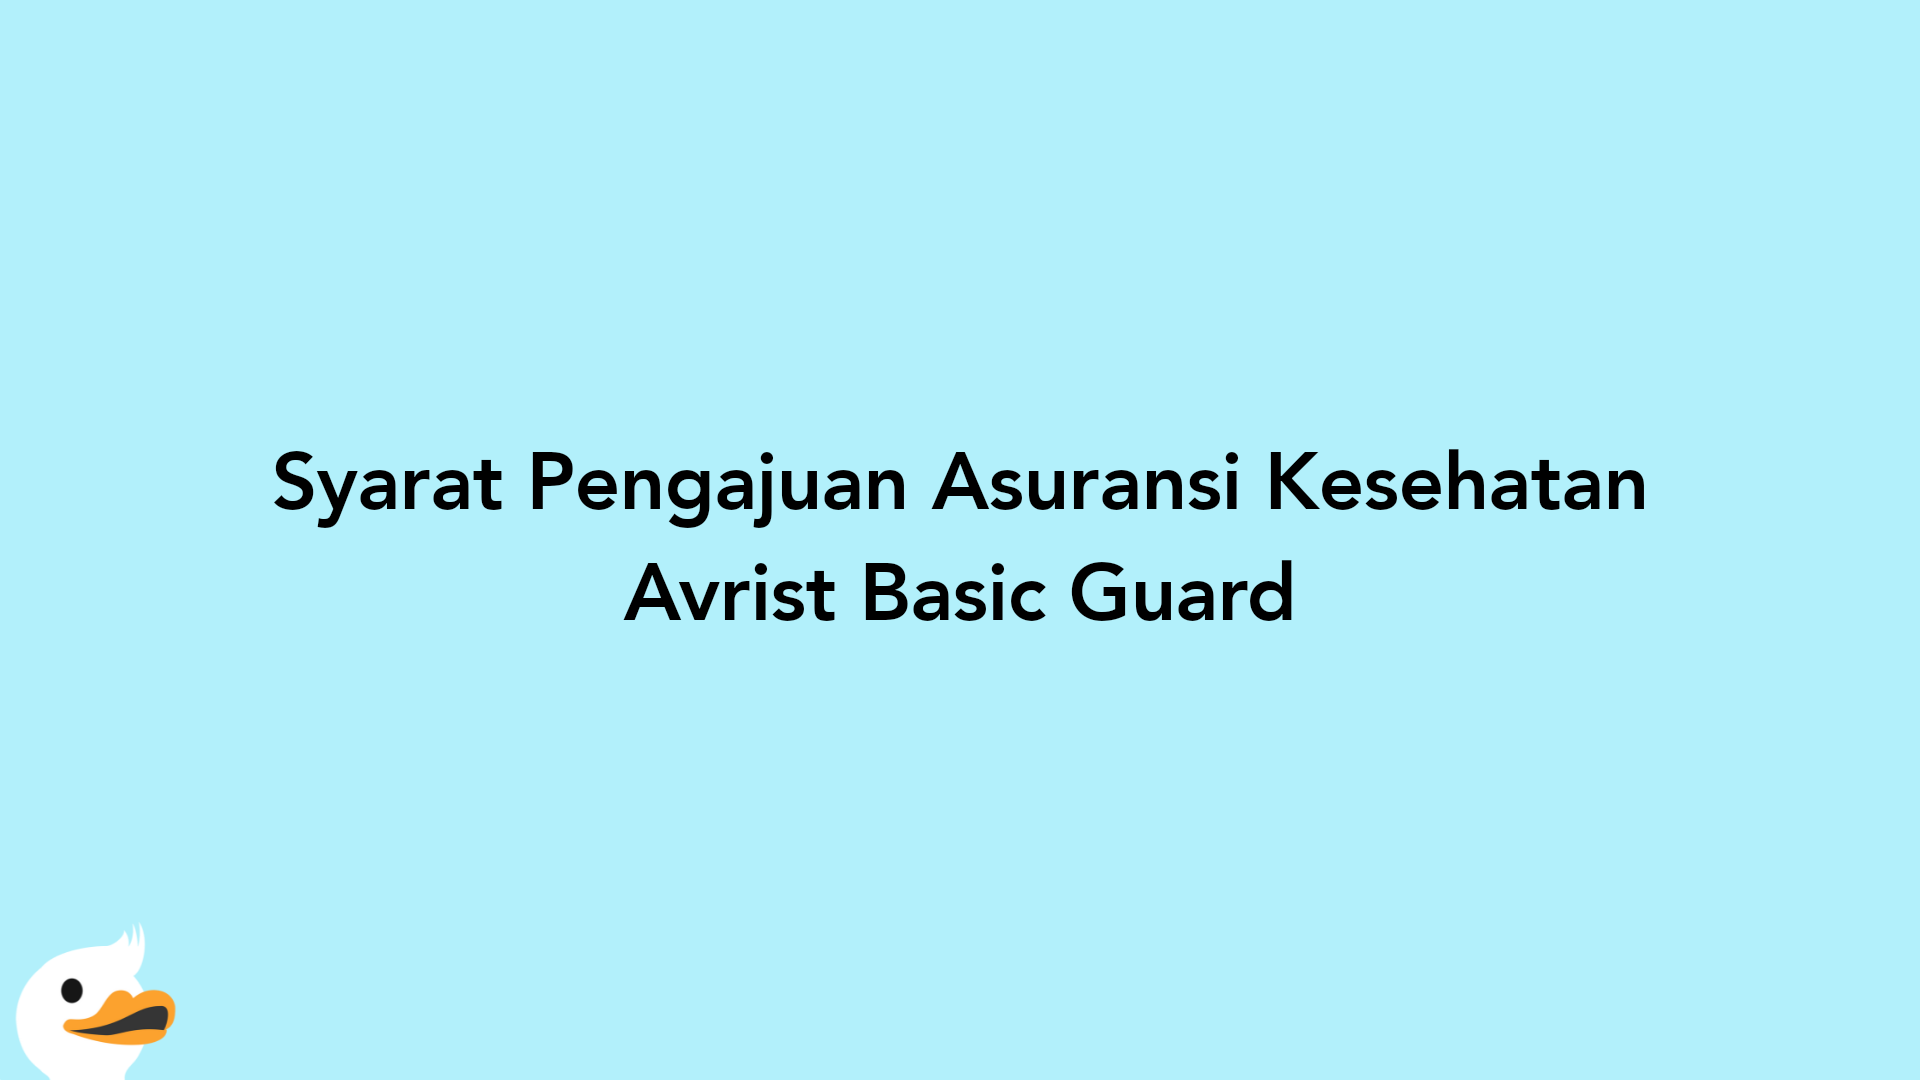 Syarat Pengajuan Asuransi Kesehatan Avrist Basic Guard